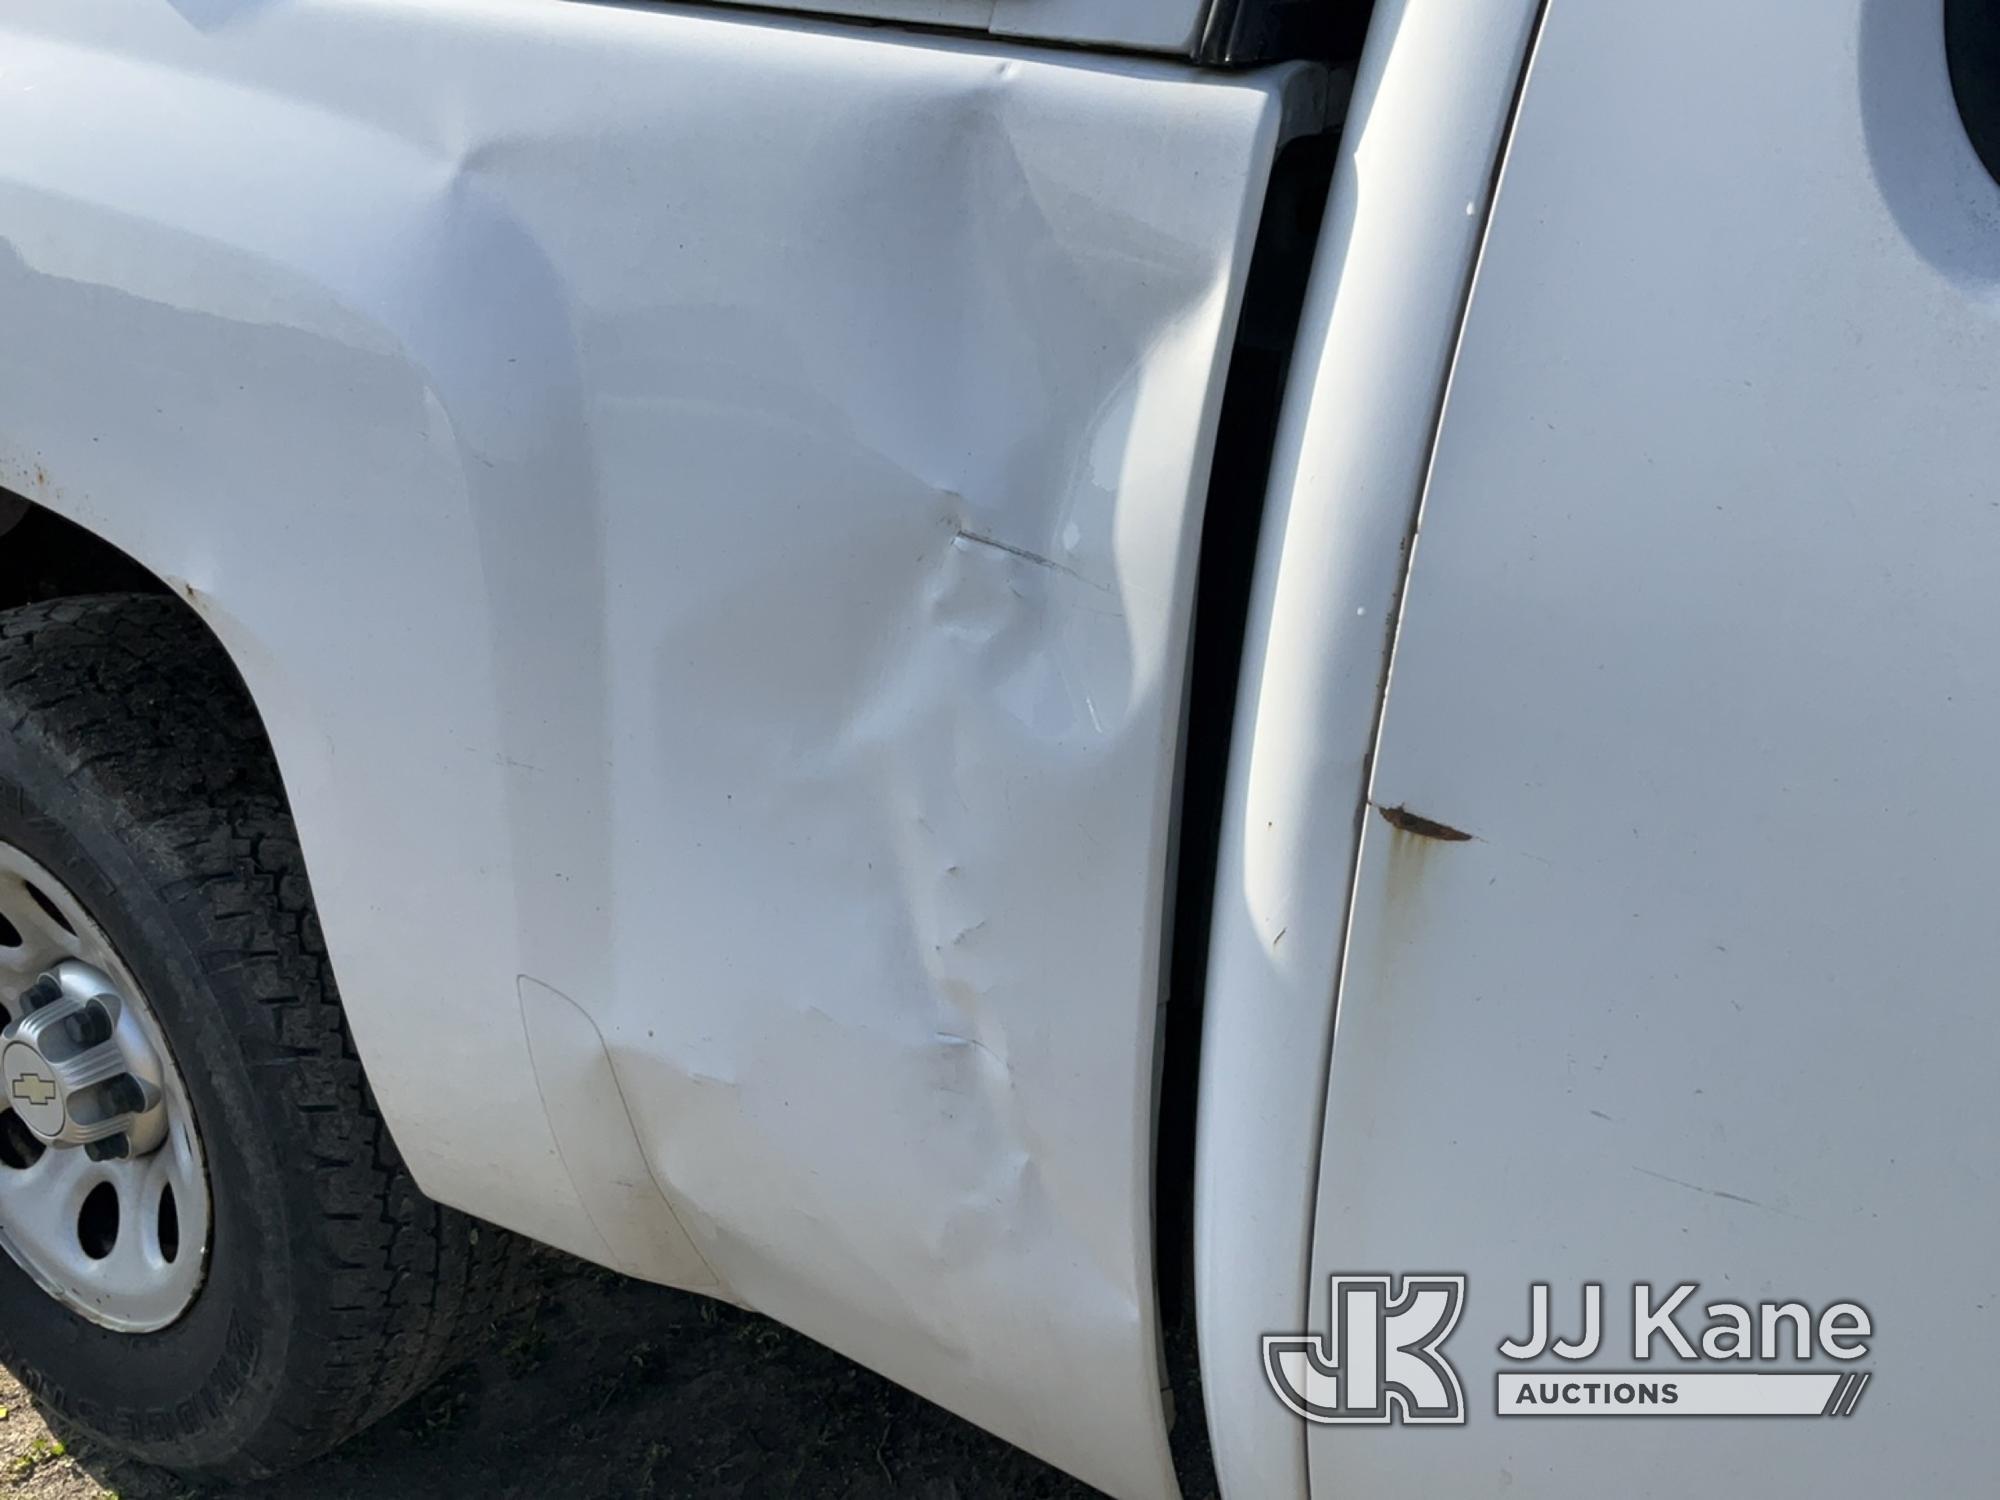 (Bellport, NY) 2012 Chevrolet Silverado 1500 4x4 Extended-Cab Pickup Truck Runs & Moves, Body Damage